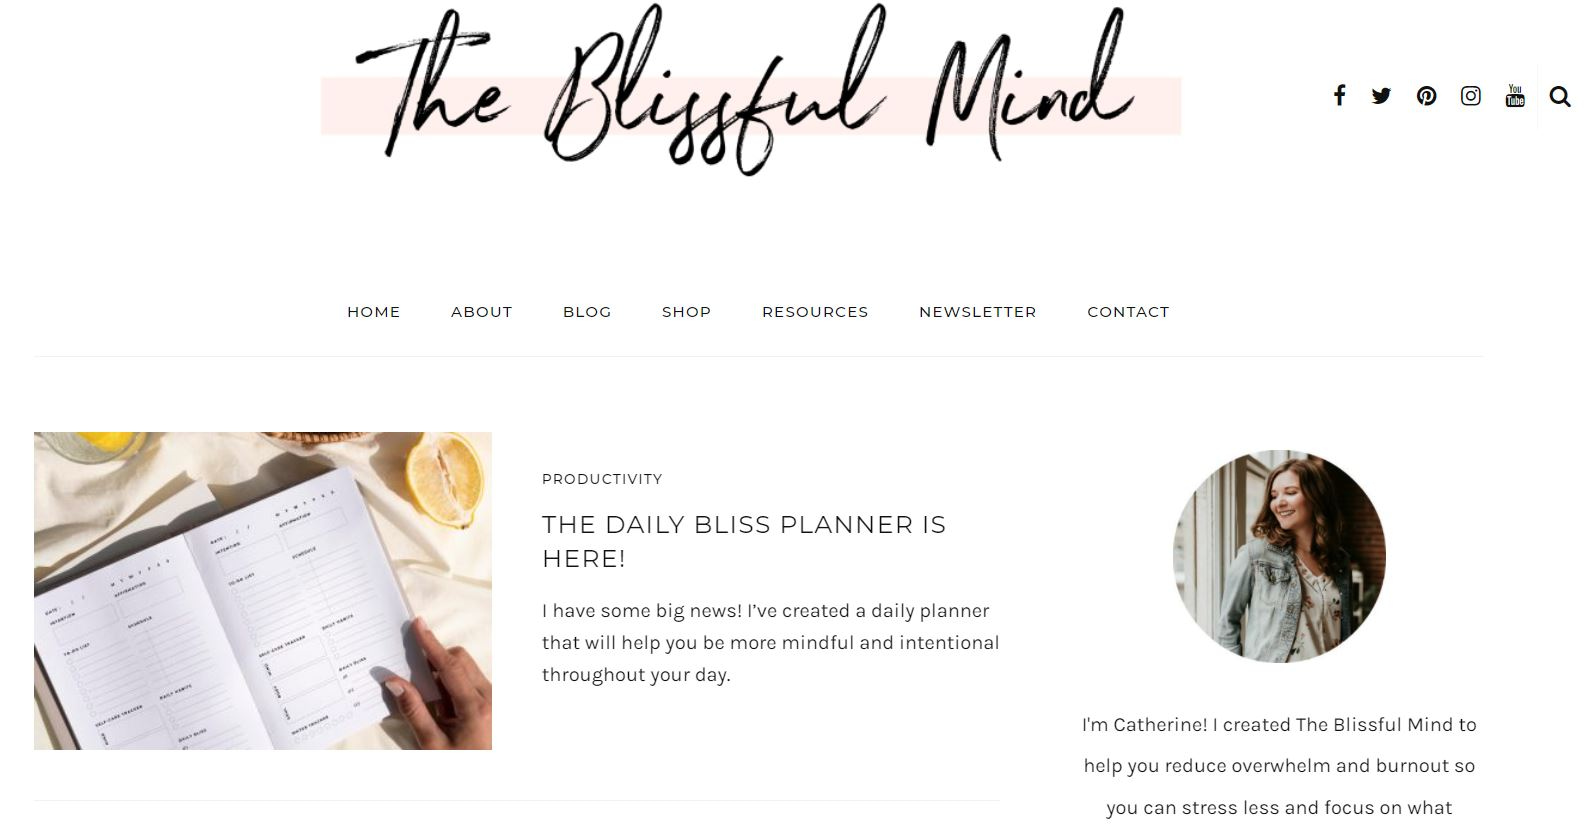 关于自我保健的 Blissful Mind 博客，这是 2022 年最赚钱的博客领域之一。